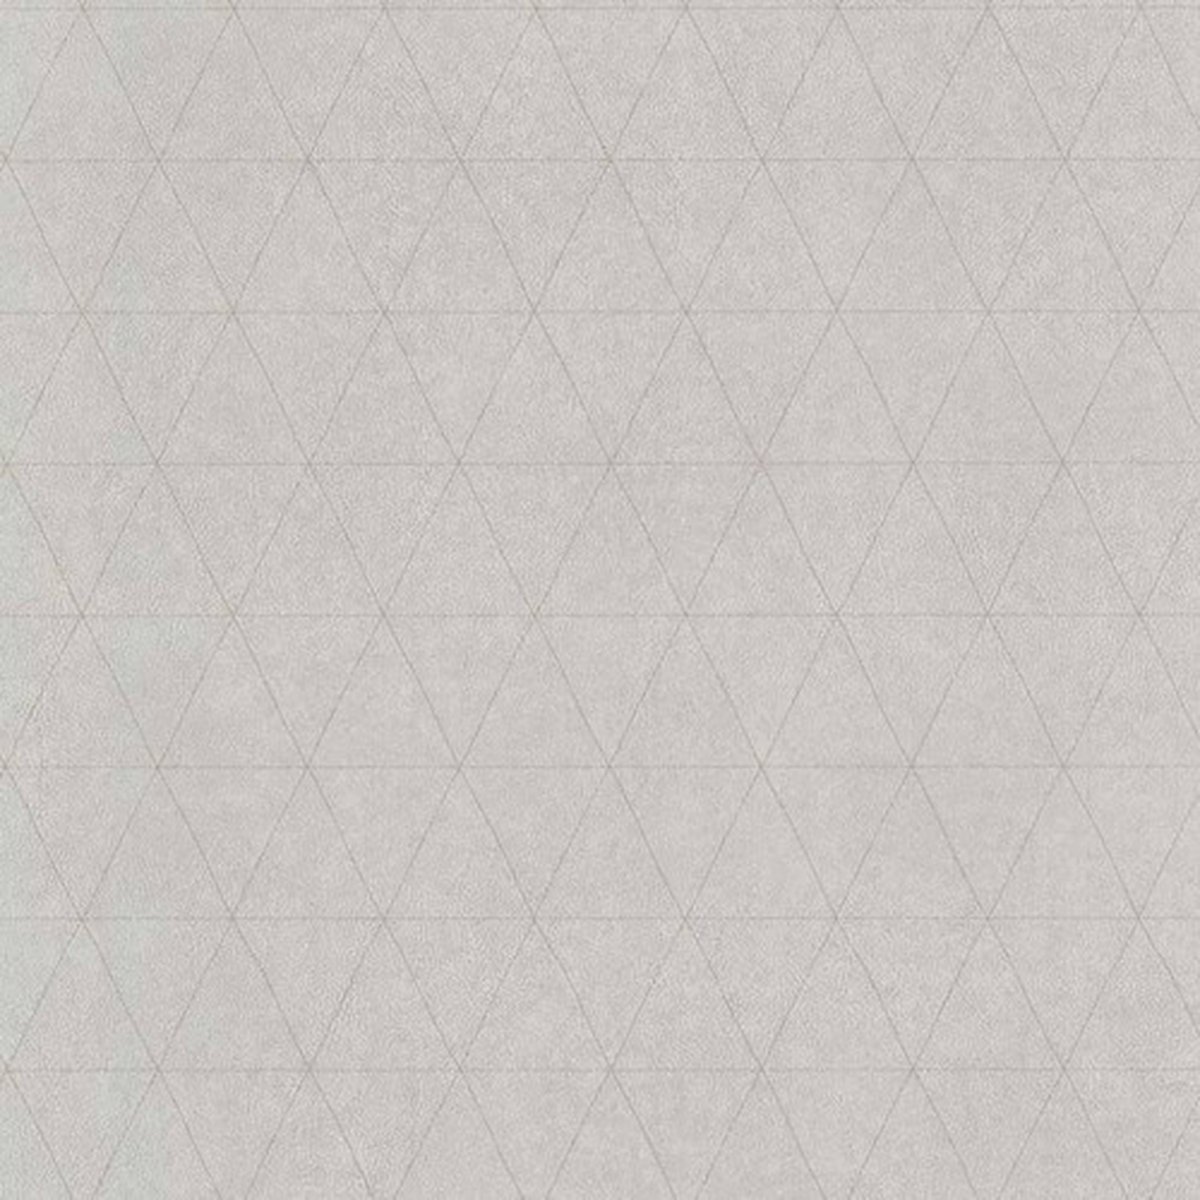 Noordwand couleurs & matières Behang Triangles grijs